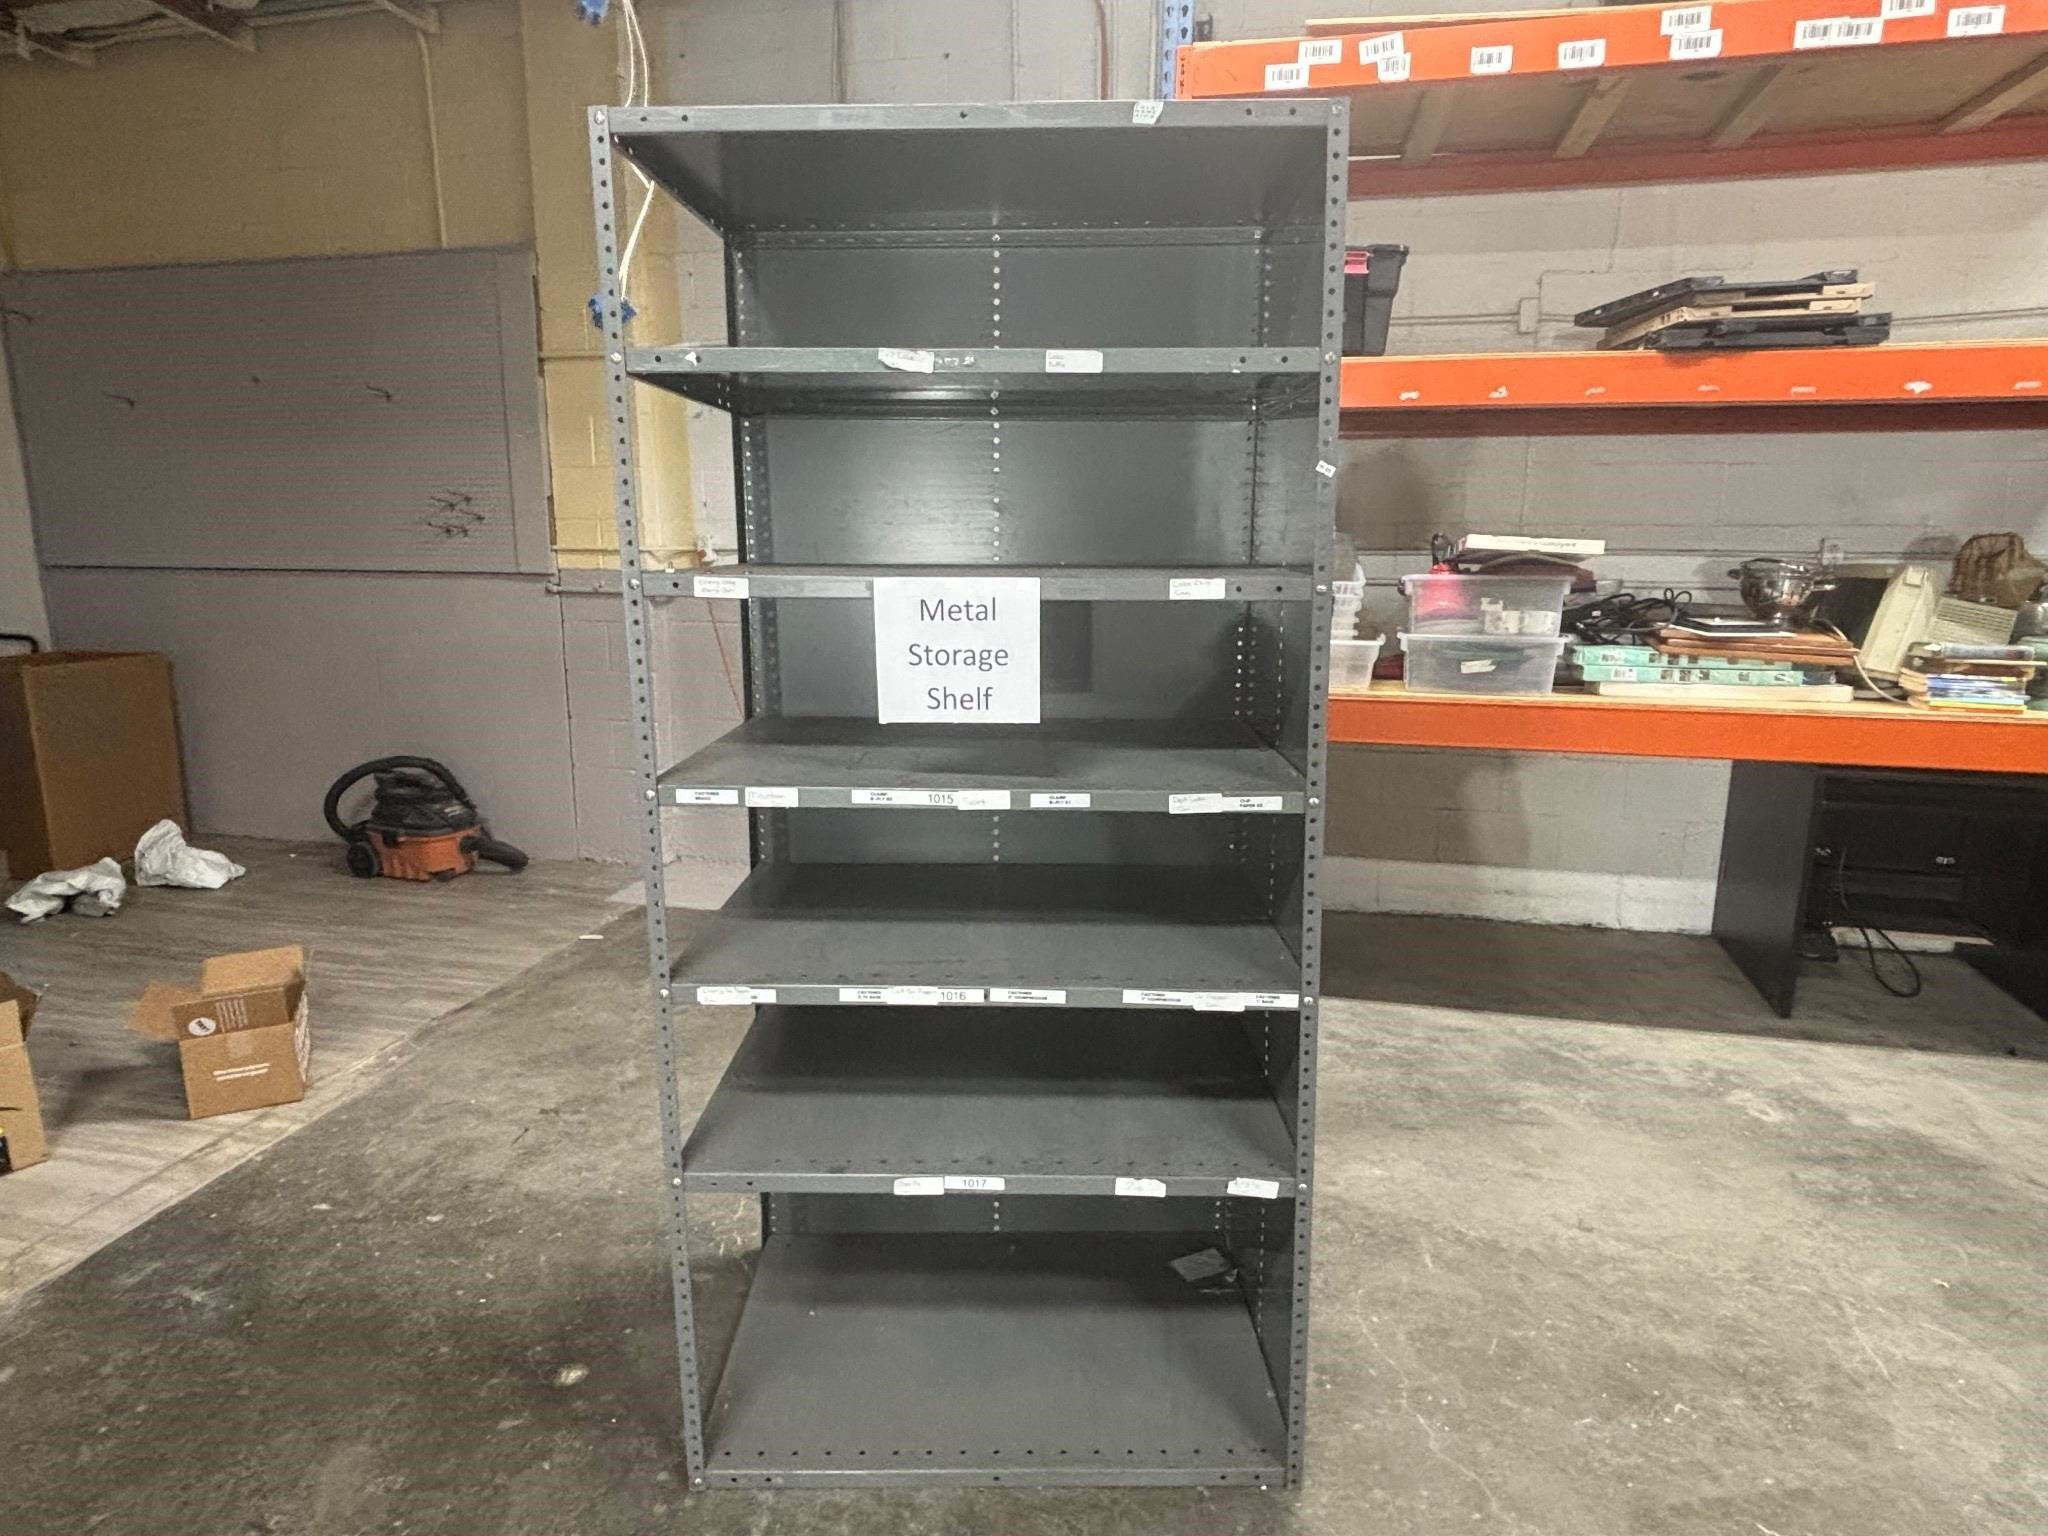 Metal Storage Shelf 36” x 24” x 75”